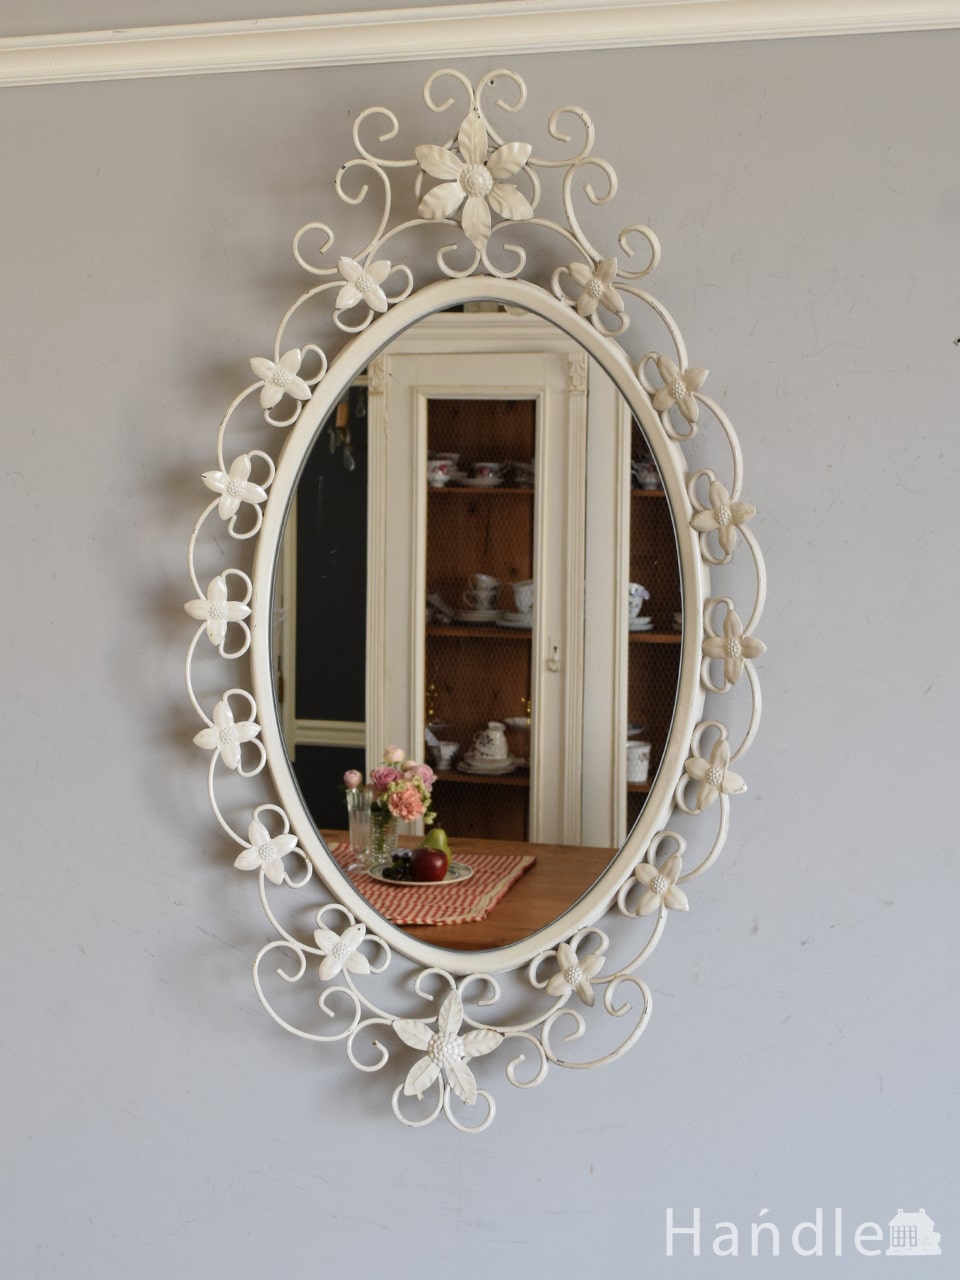 アンティークのおしゃれな壁掛けミラー、お花のモチーフが可愛い白いオーバル型の鏡 (m-6819-z)